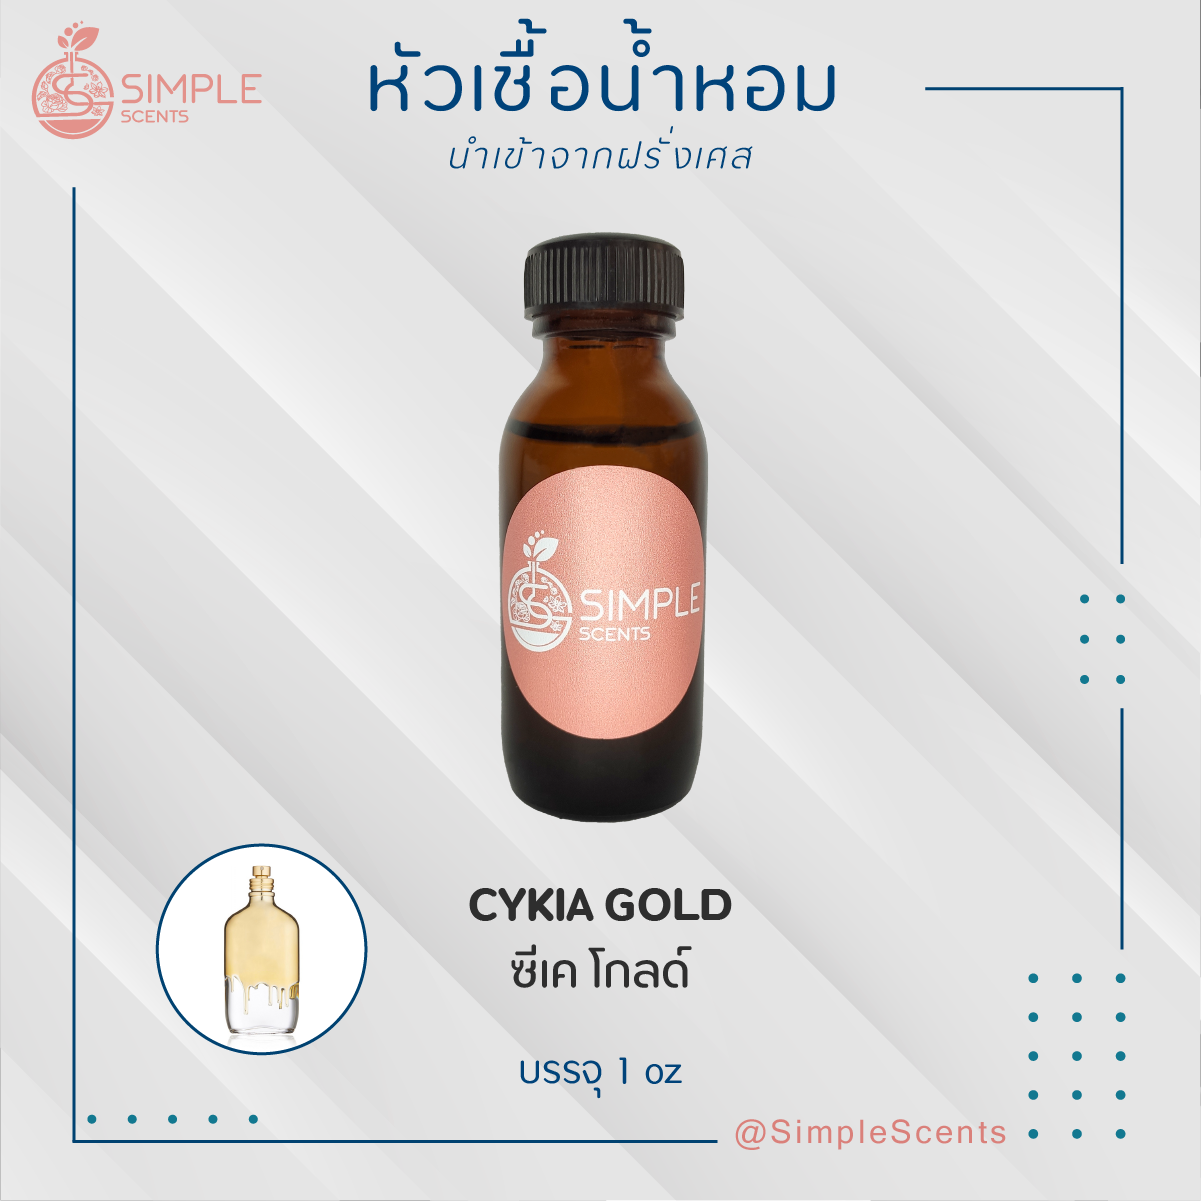 CYKIA GOLD / ซีเค โกลด์